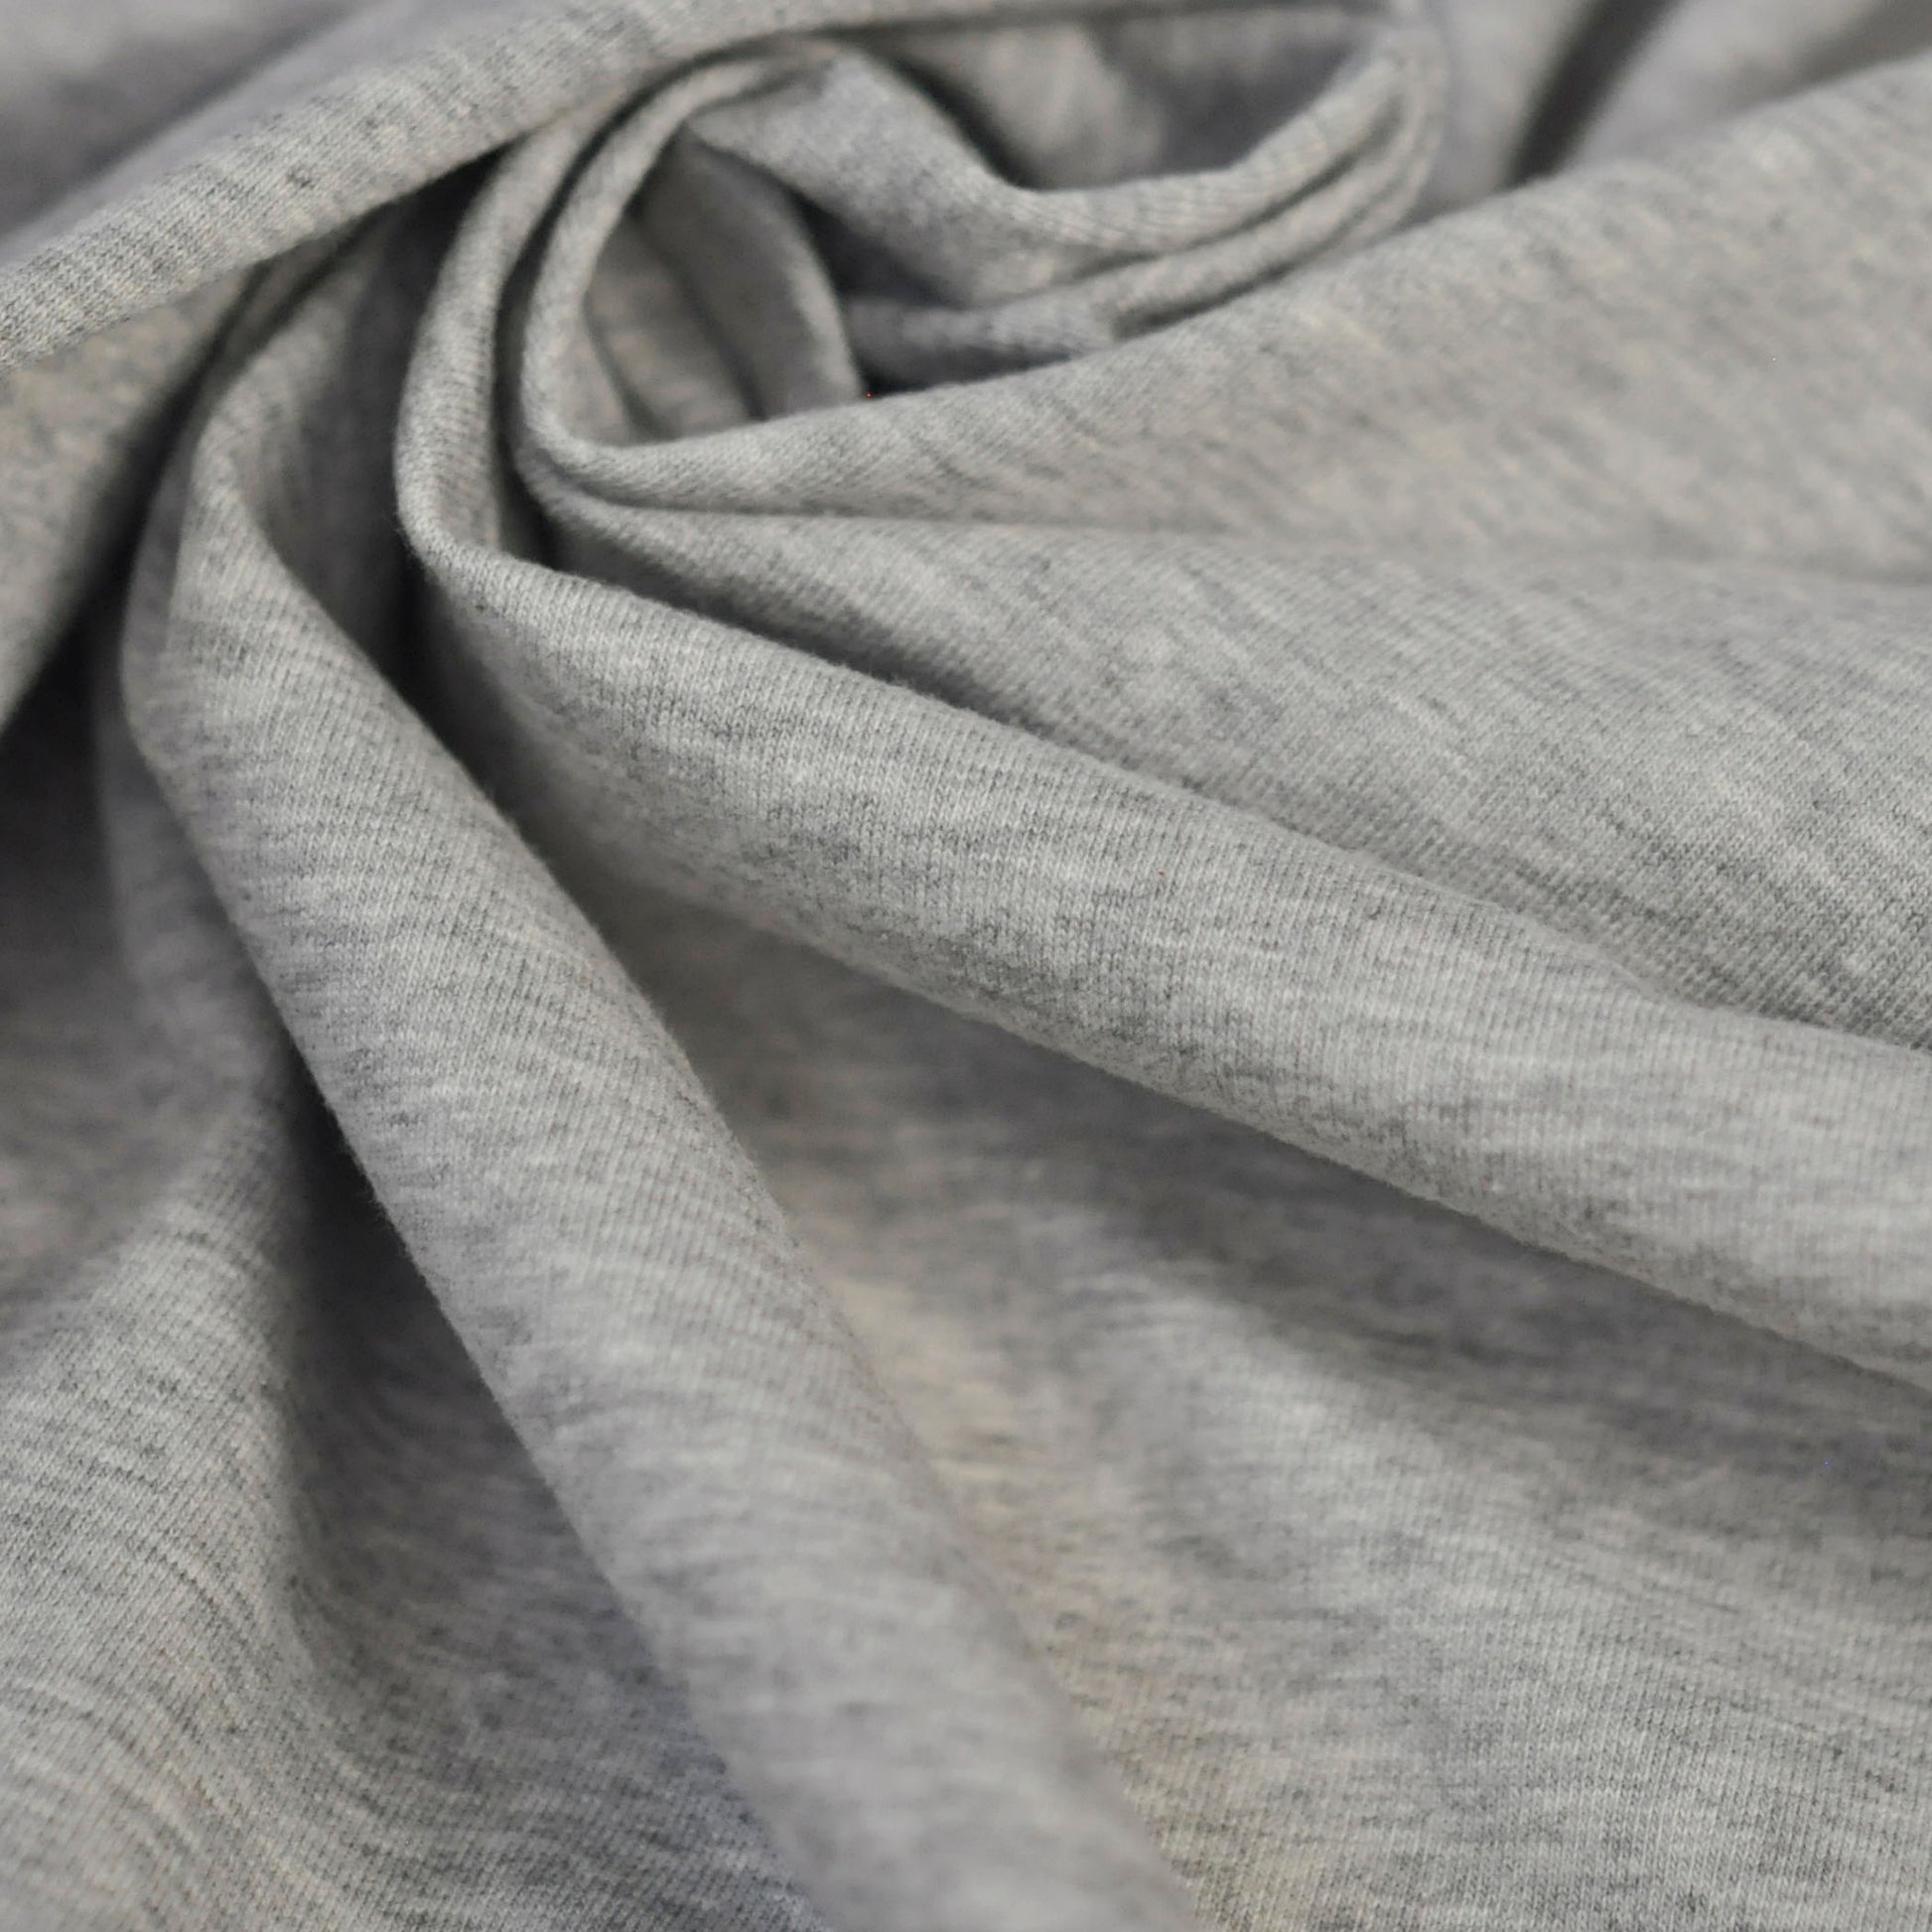 95% Organic Cotton, 5% Elastane Single Jersey - Grey Melange